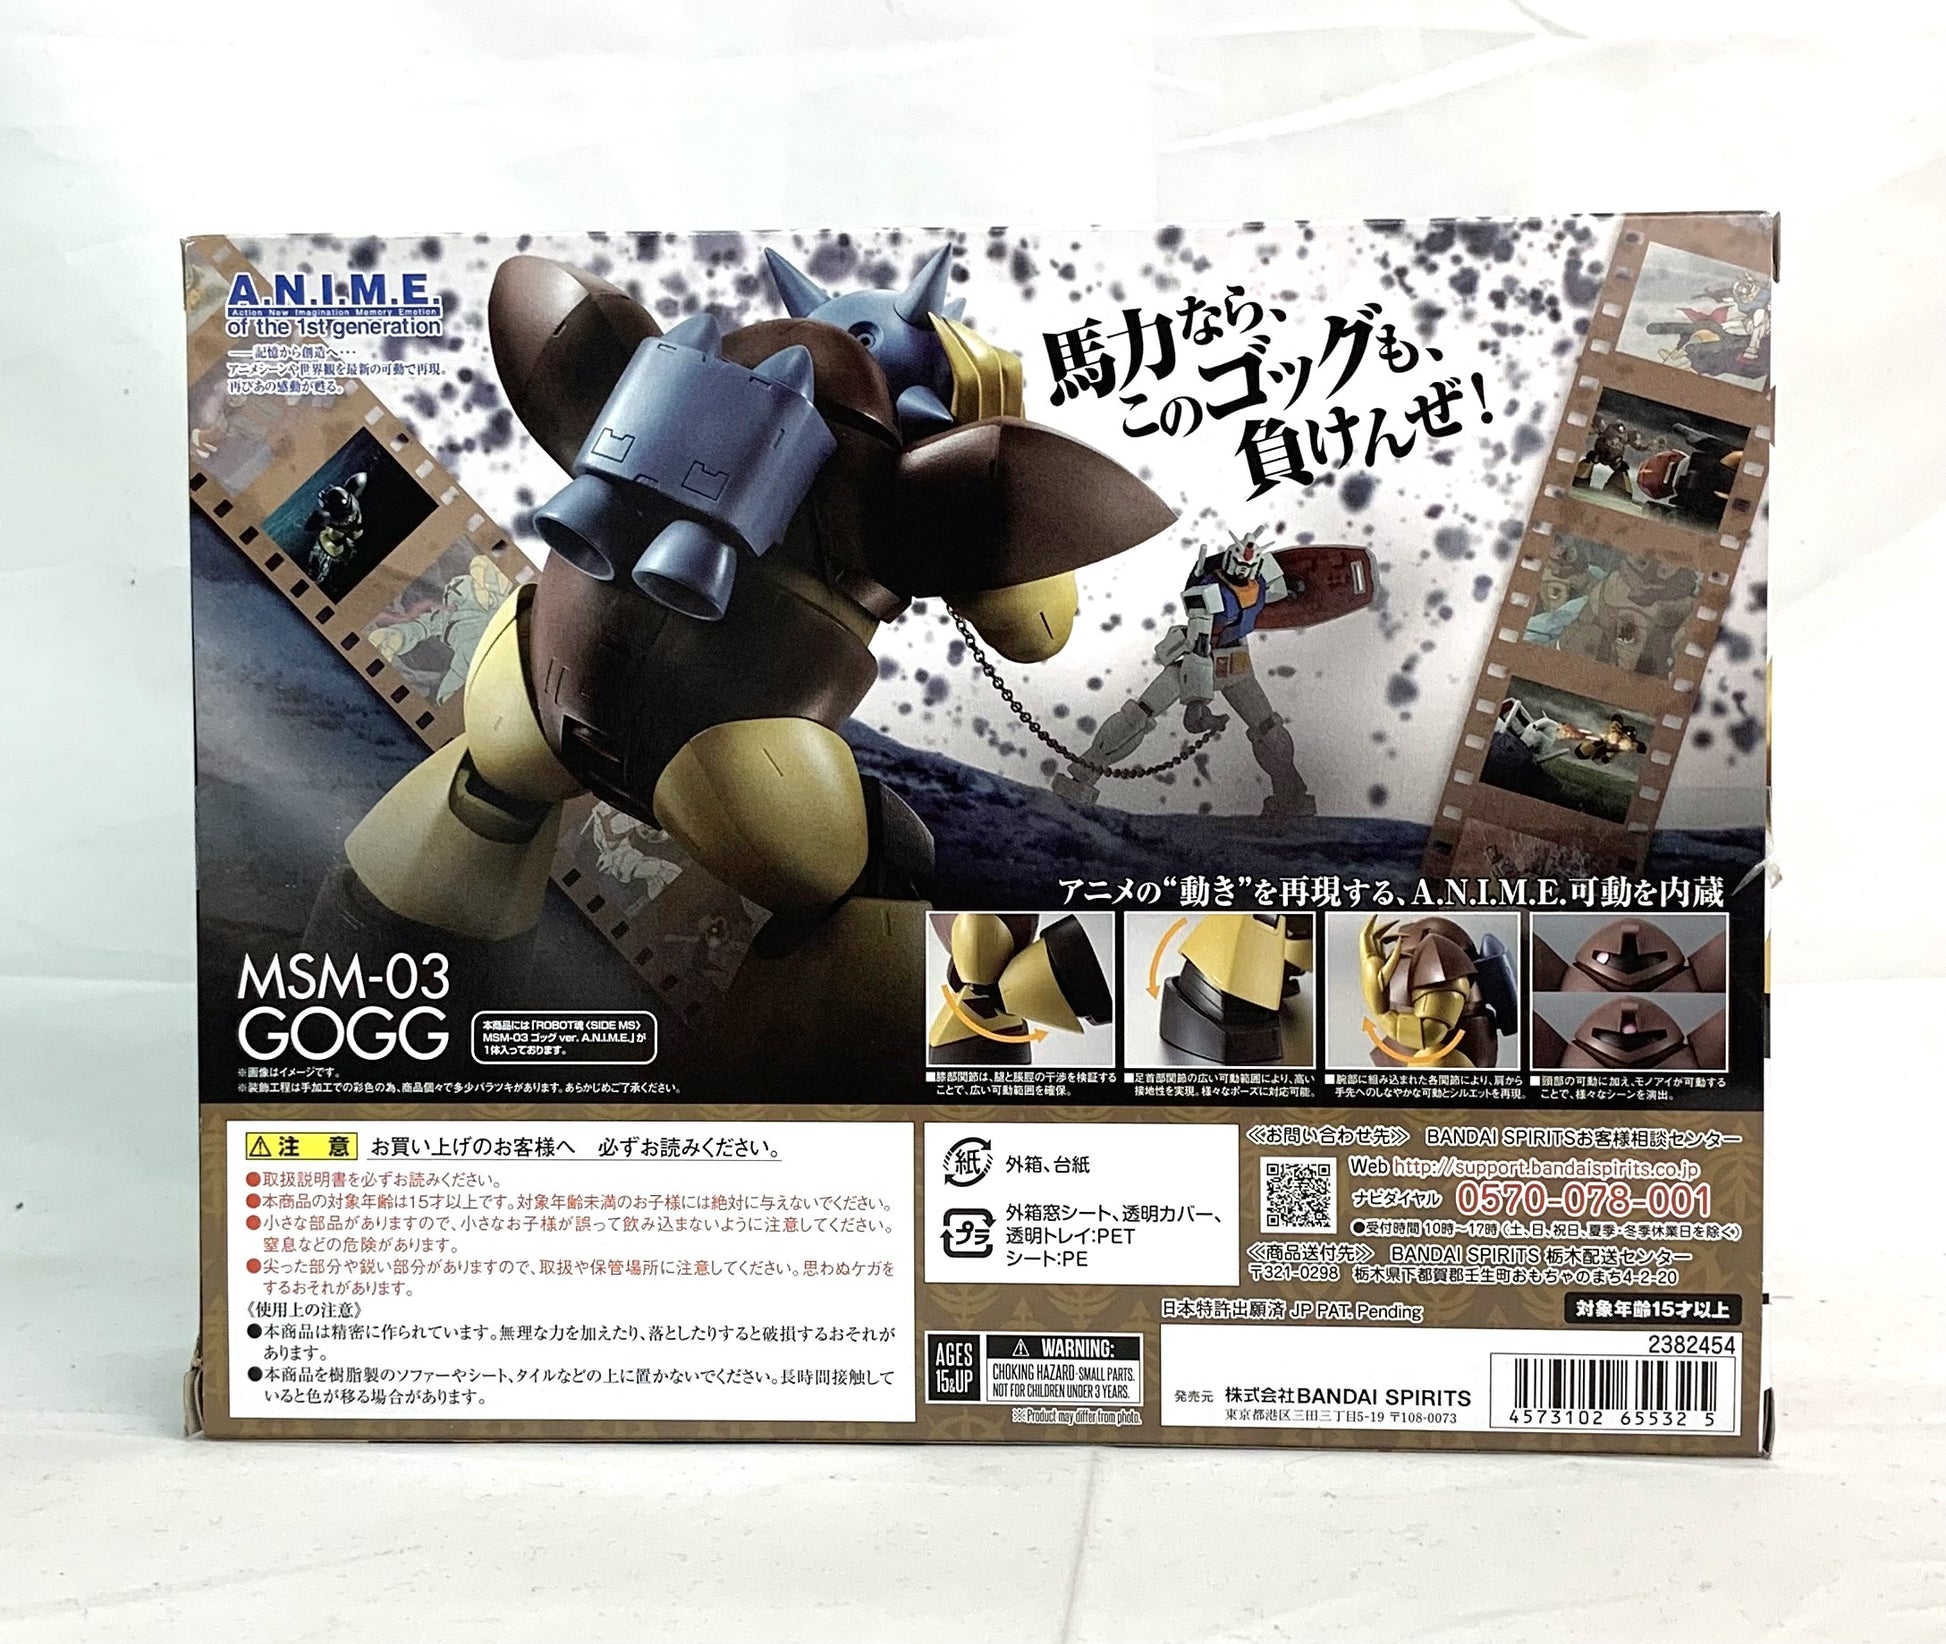 Robot Spirits -SIDE MS- MSM-03 Gogg ver. A.N.I.M.E. "Mobile Suit Gundam", animota